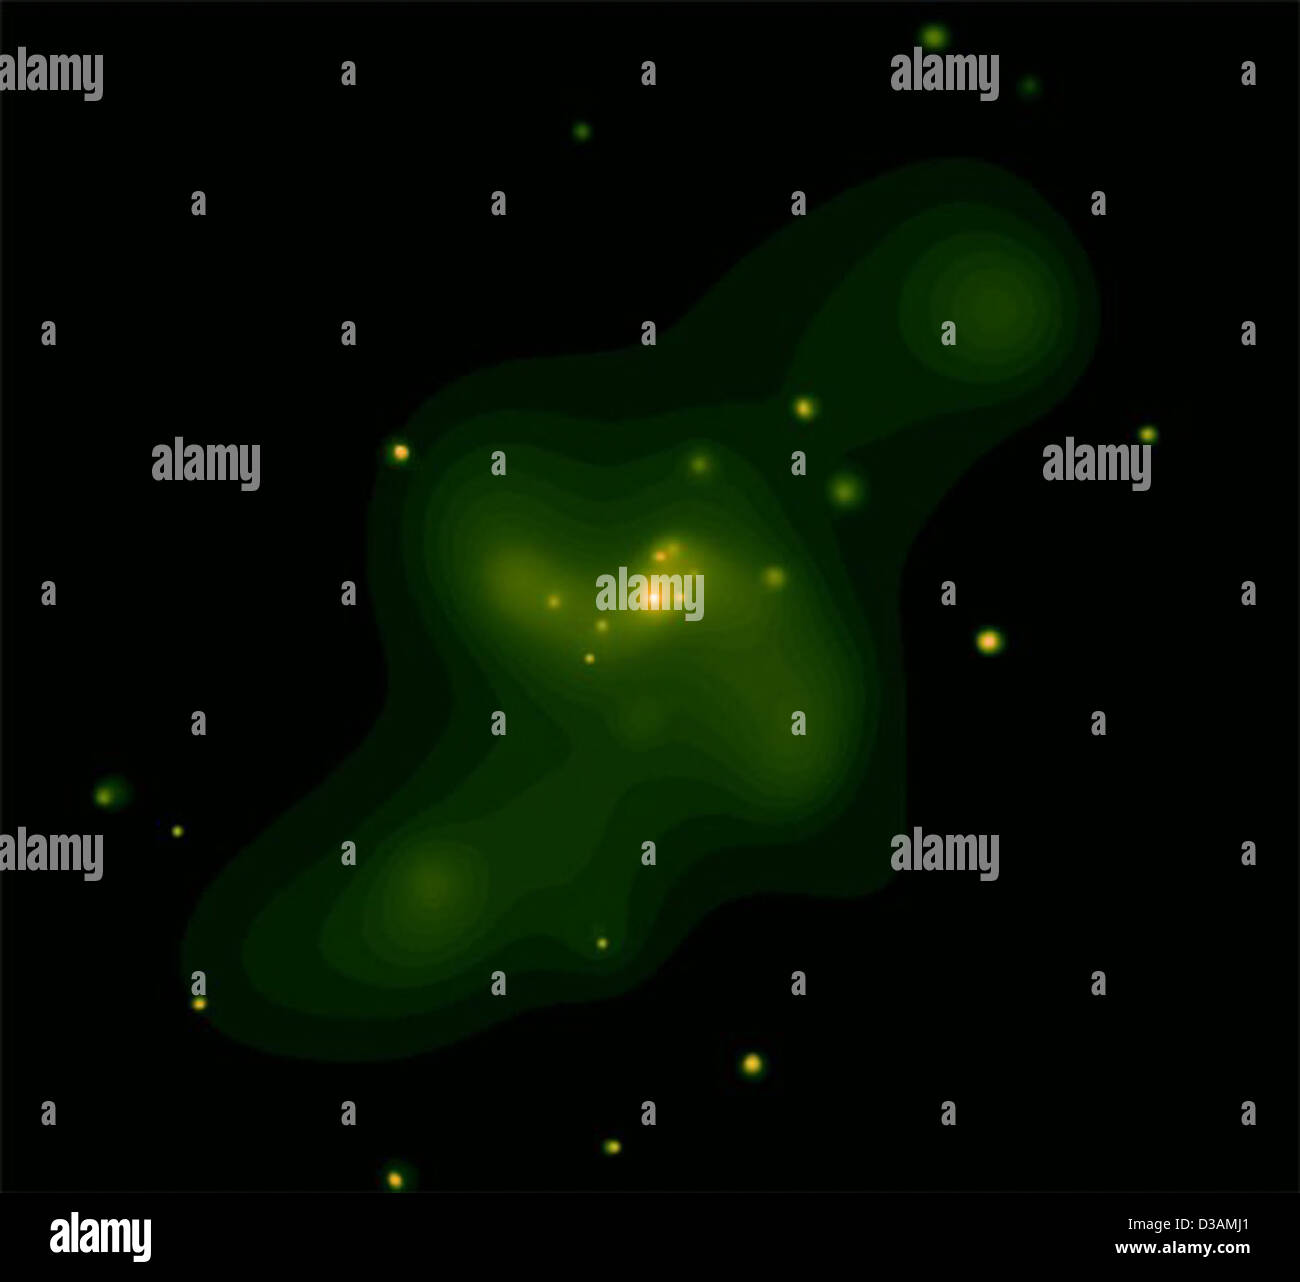 Astronomia Aggiornamento: buchi neri indicano "selvaggio la gioventù" per Galaxy (NASA, Chandra, 6/4/02) Foto Stock